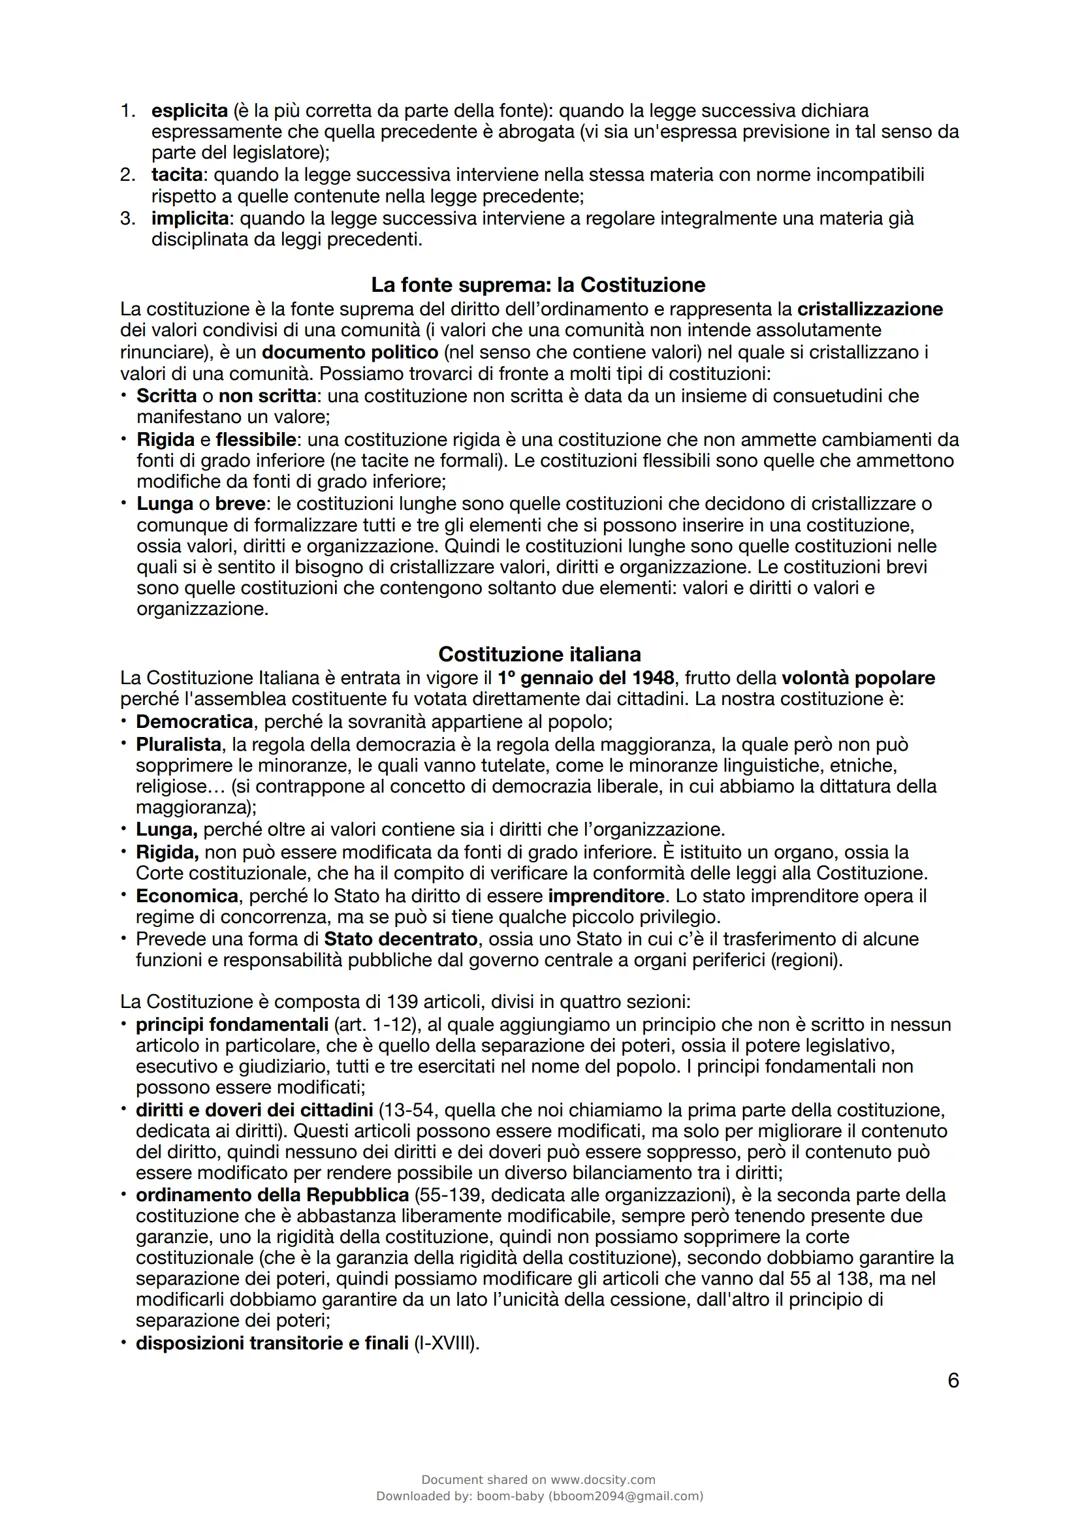 docsity
Appunti A.Papa Istituzioni di
diritto pubblico
Istituzioni Di Diritto Pubblico
L'Università degli Studi di Napoli Parthenope
53 pag.